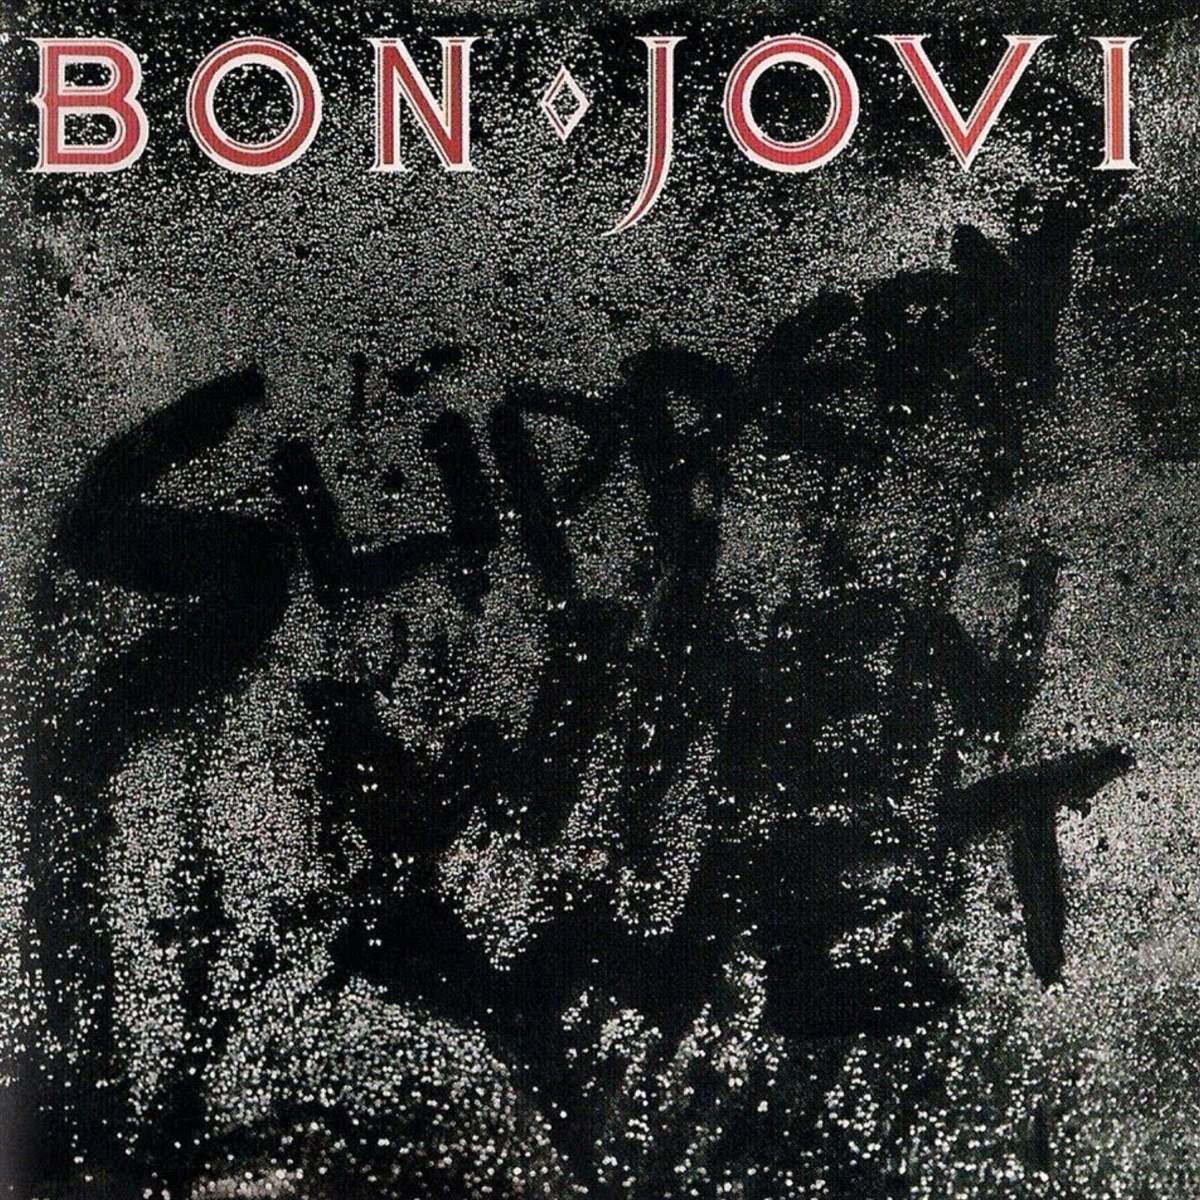 Bon Jovi - "Slippery When Wet" (escorregadio quando molhado)